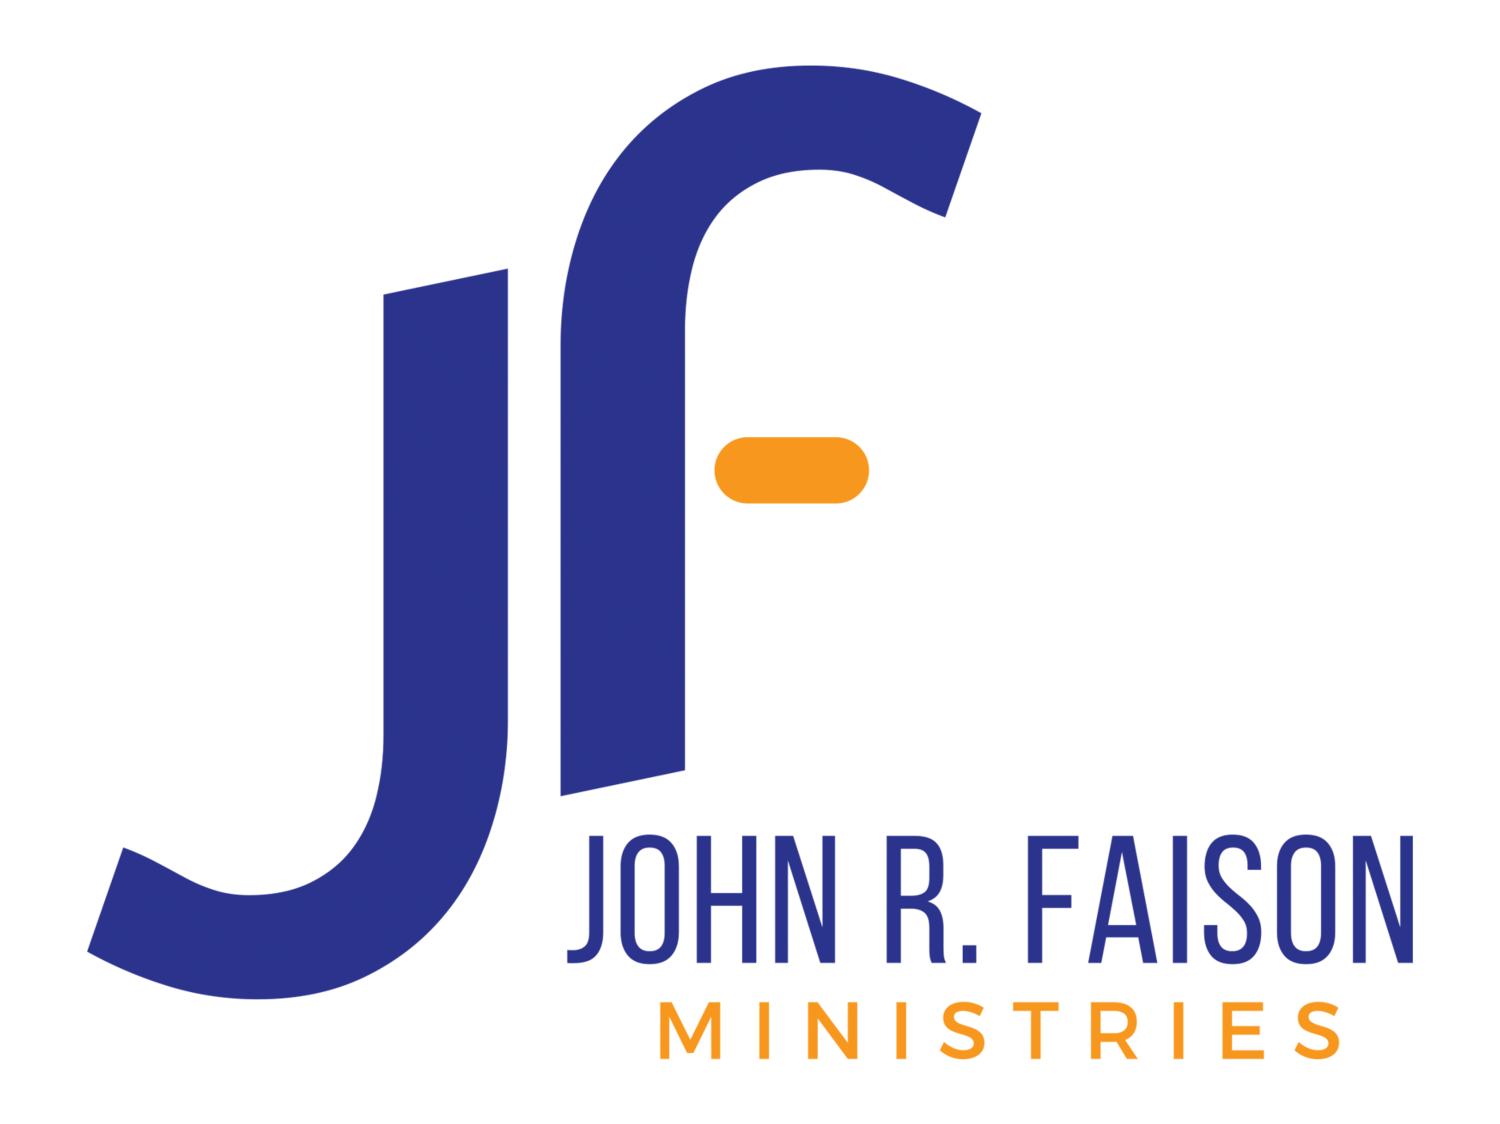 John R. Faison Ministries